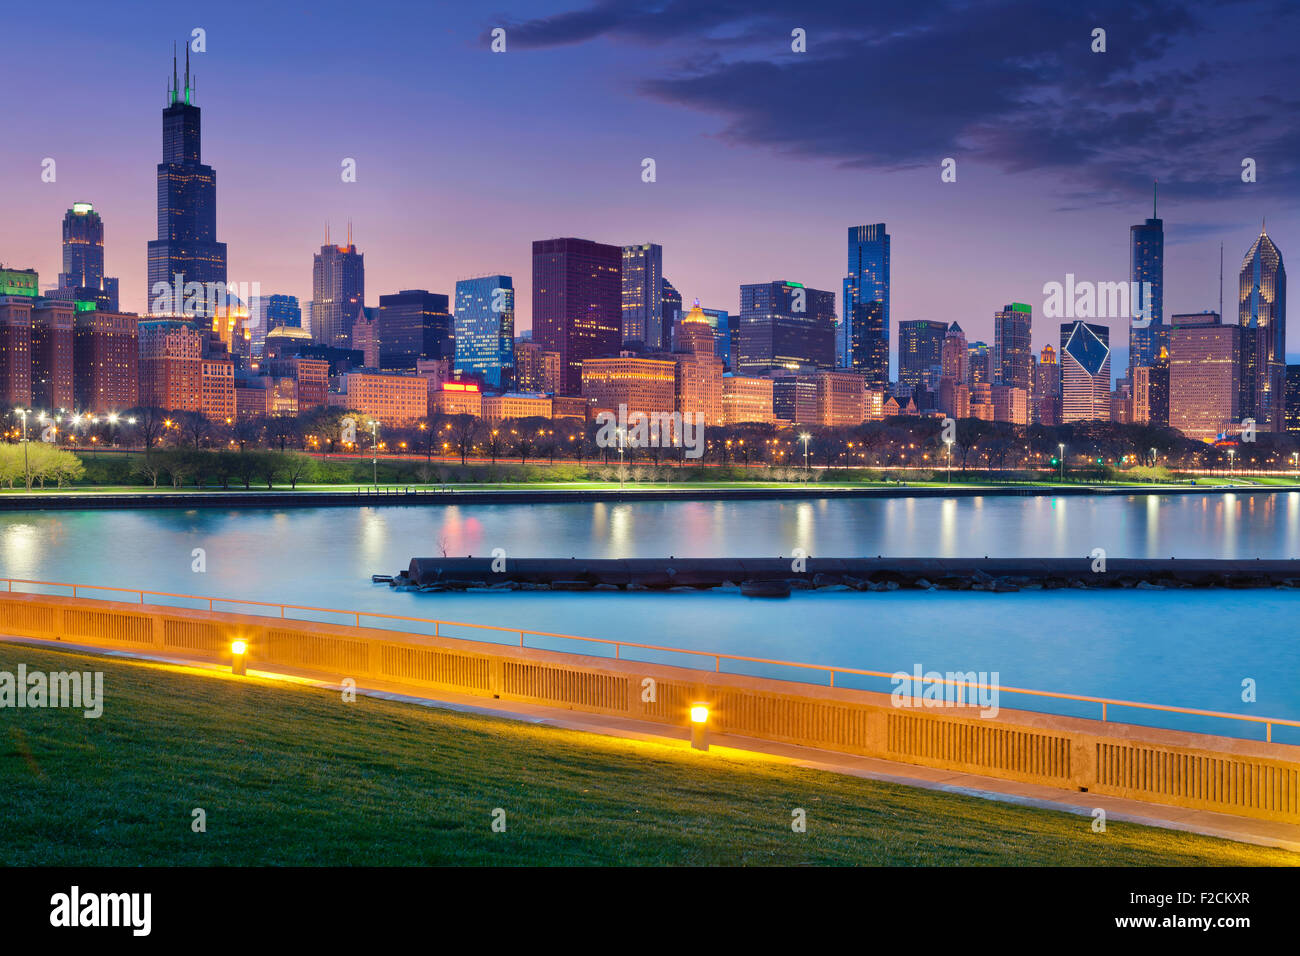 Skyline von Chicago. Bild von Chicago Skyline bei Nacht mit Reflexion auf die Lichter der Stadt im Lake Michigan. Stockfoto